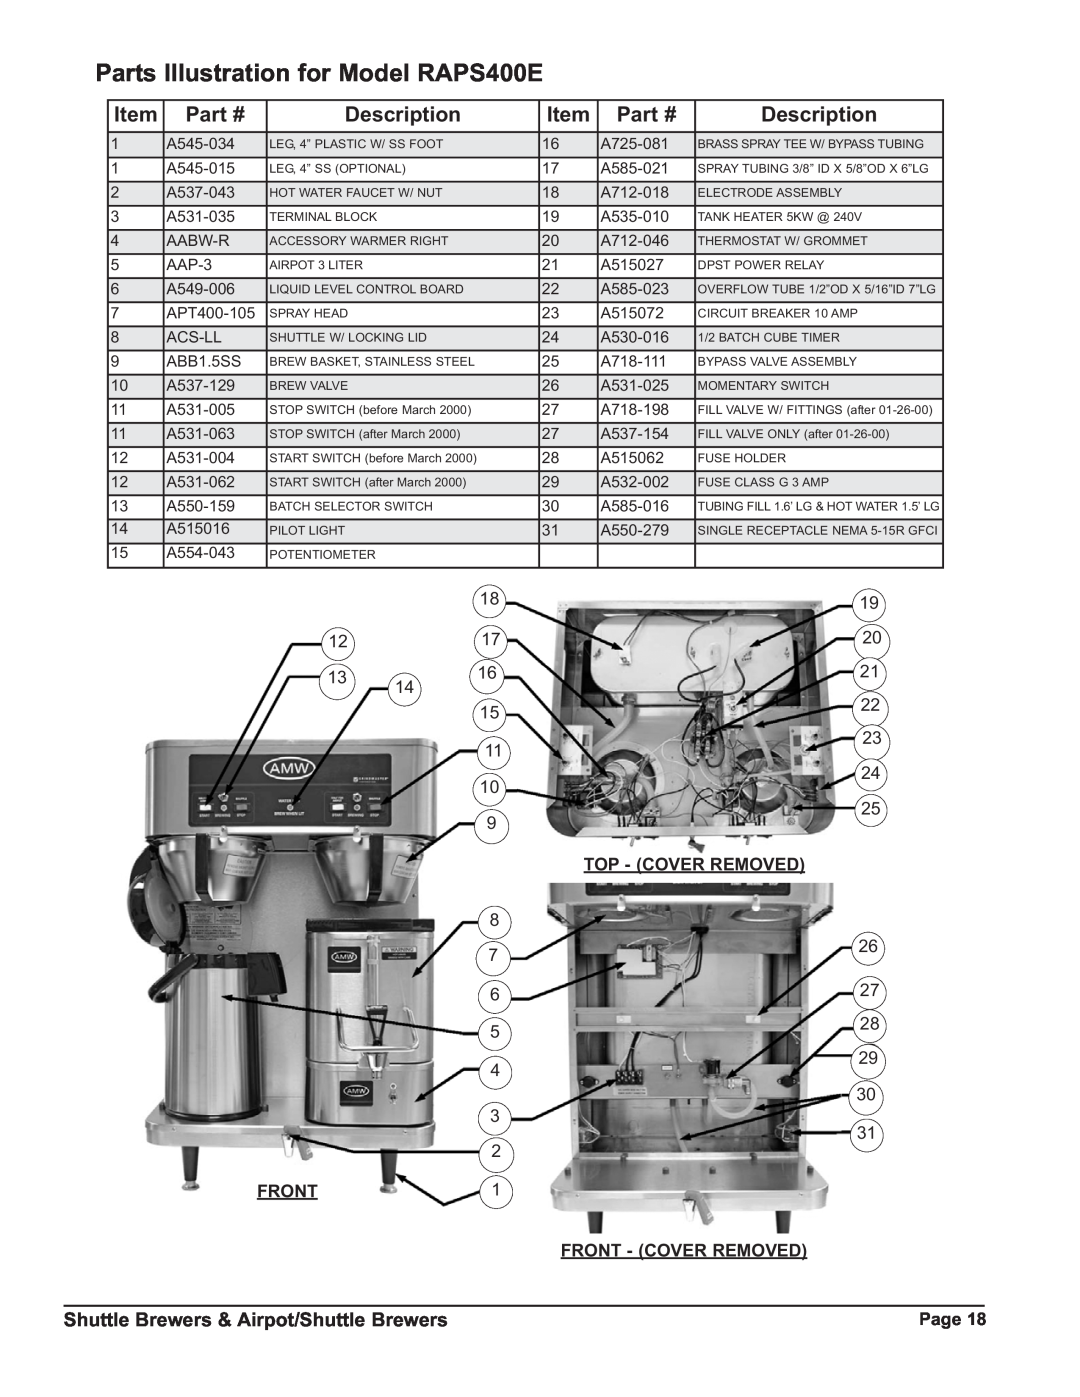 Grindmaster P400ESHP Parts Illustration for Model RAPS400E, Front, Description, Shuttle Brewers & Airpot/Shuttle Brewers 